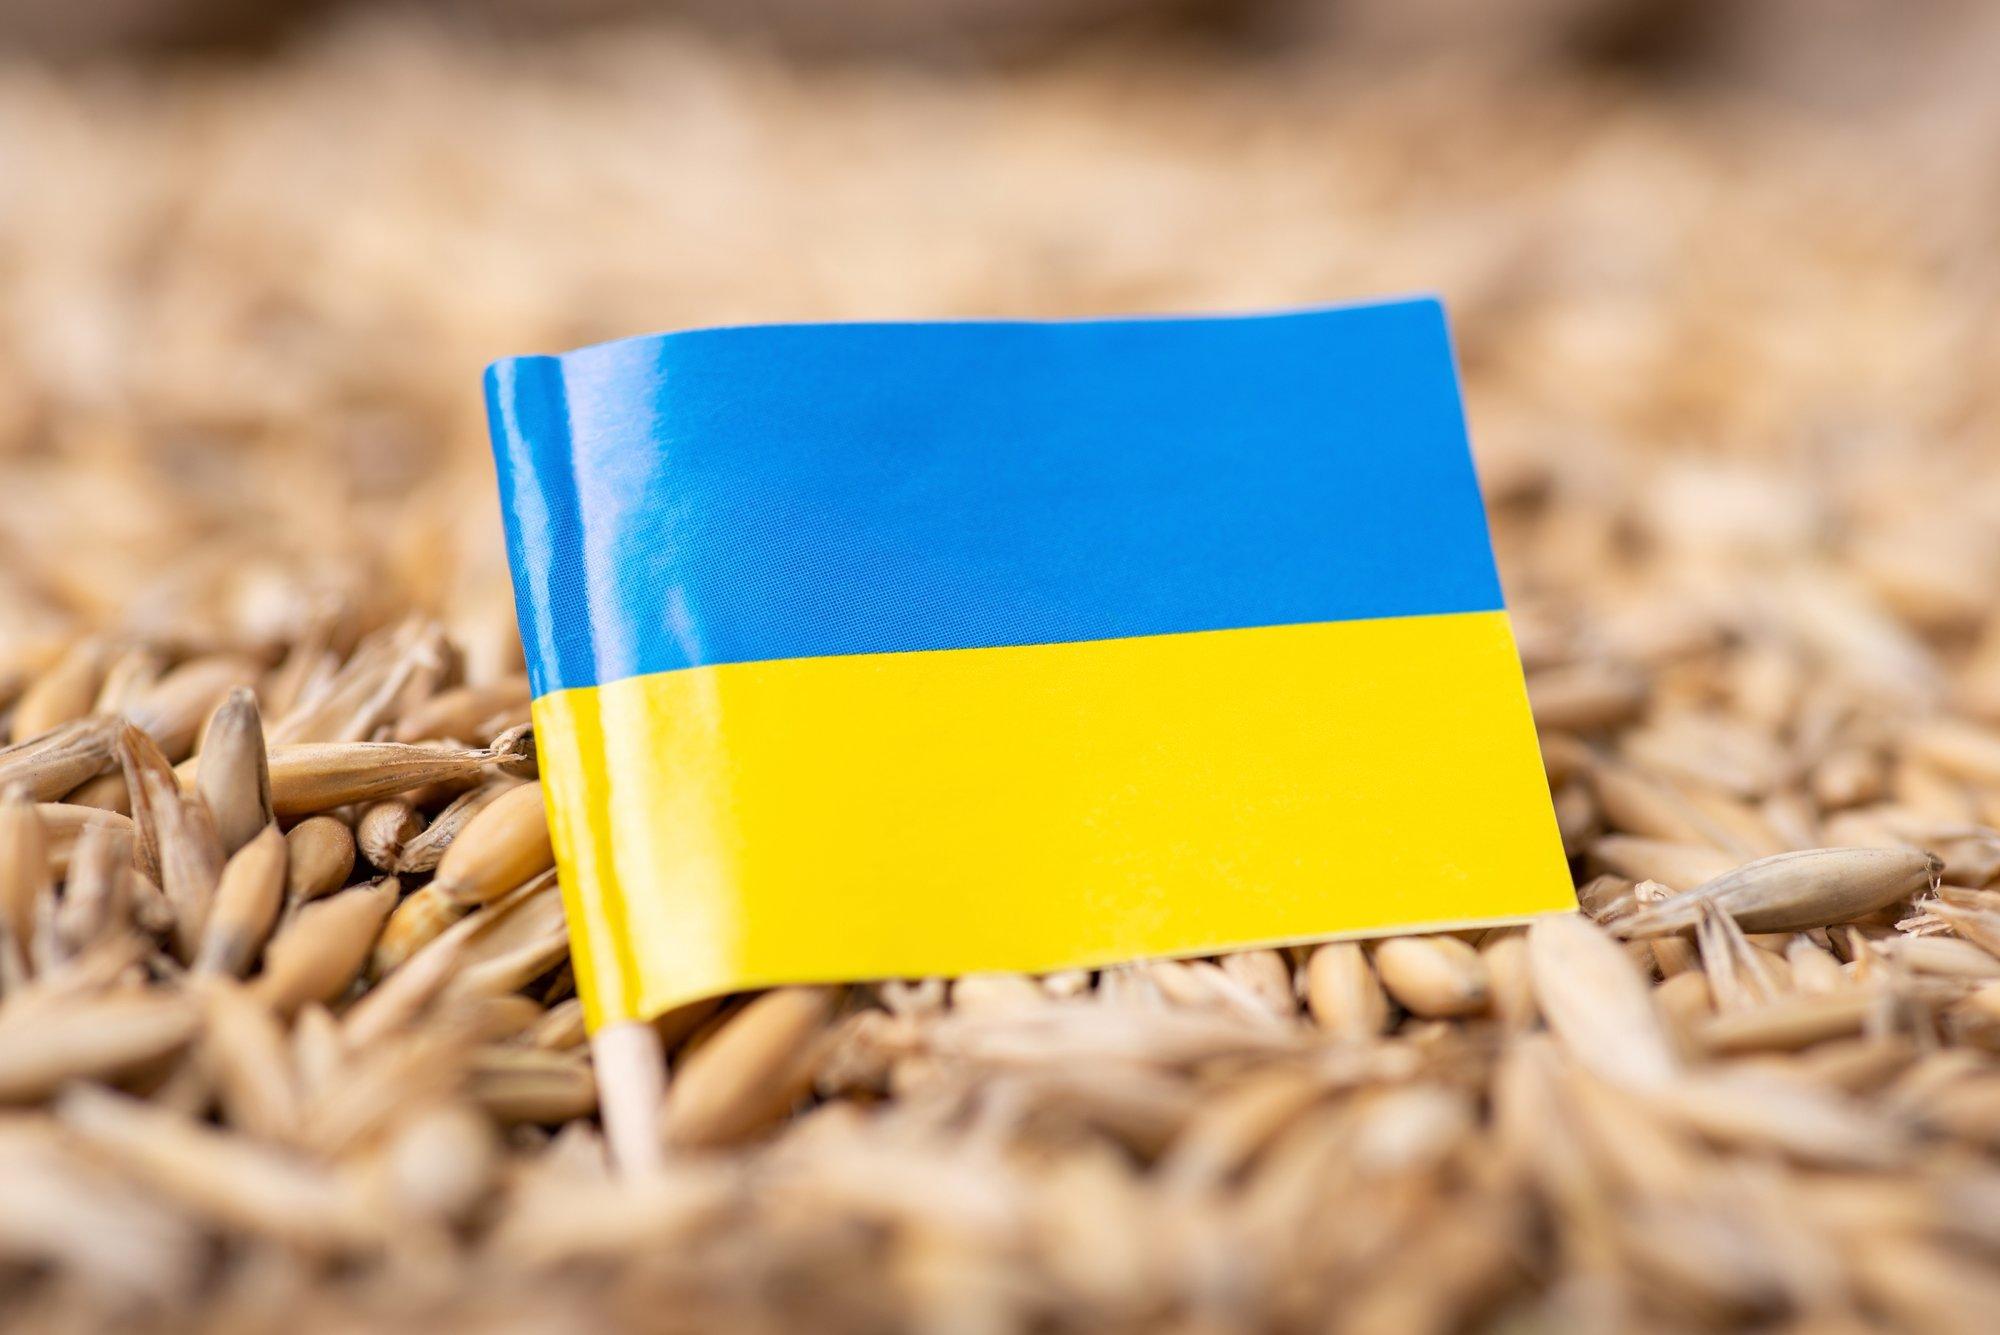 Литовский морской кластер предлагает сплавлять украинское зерно по Неману